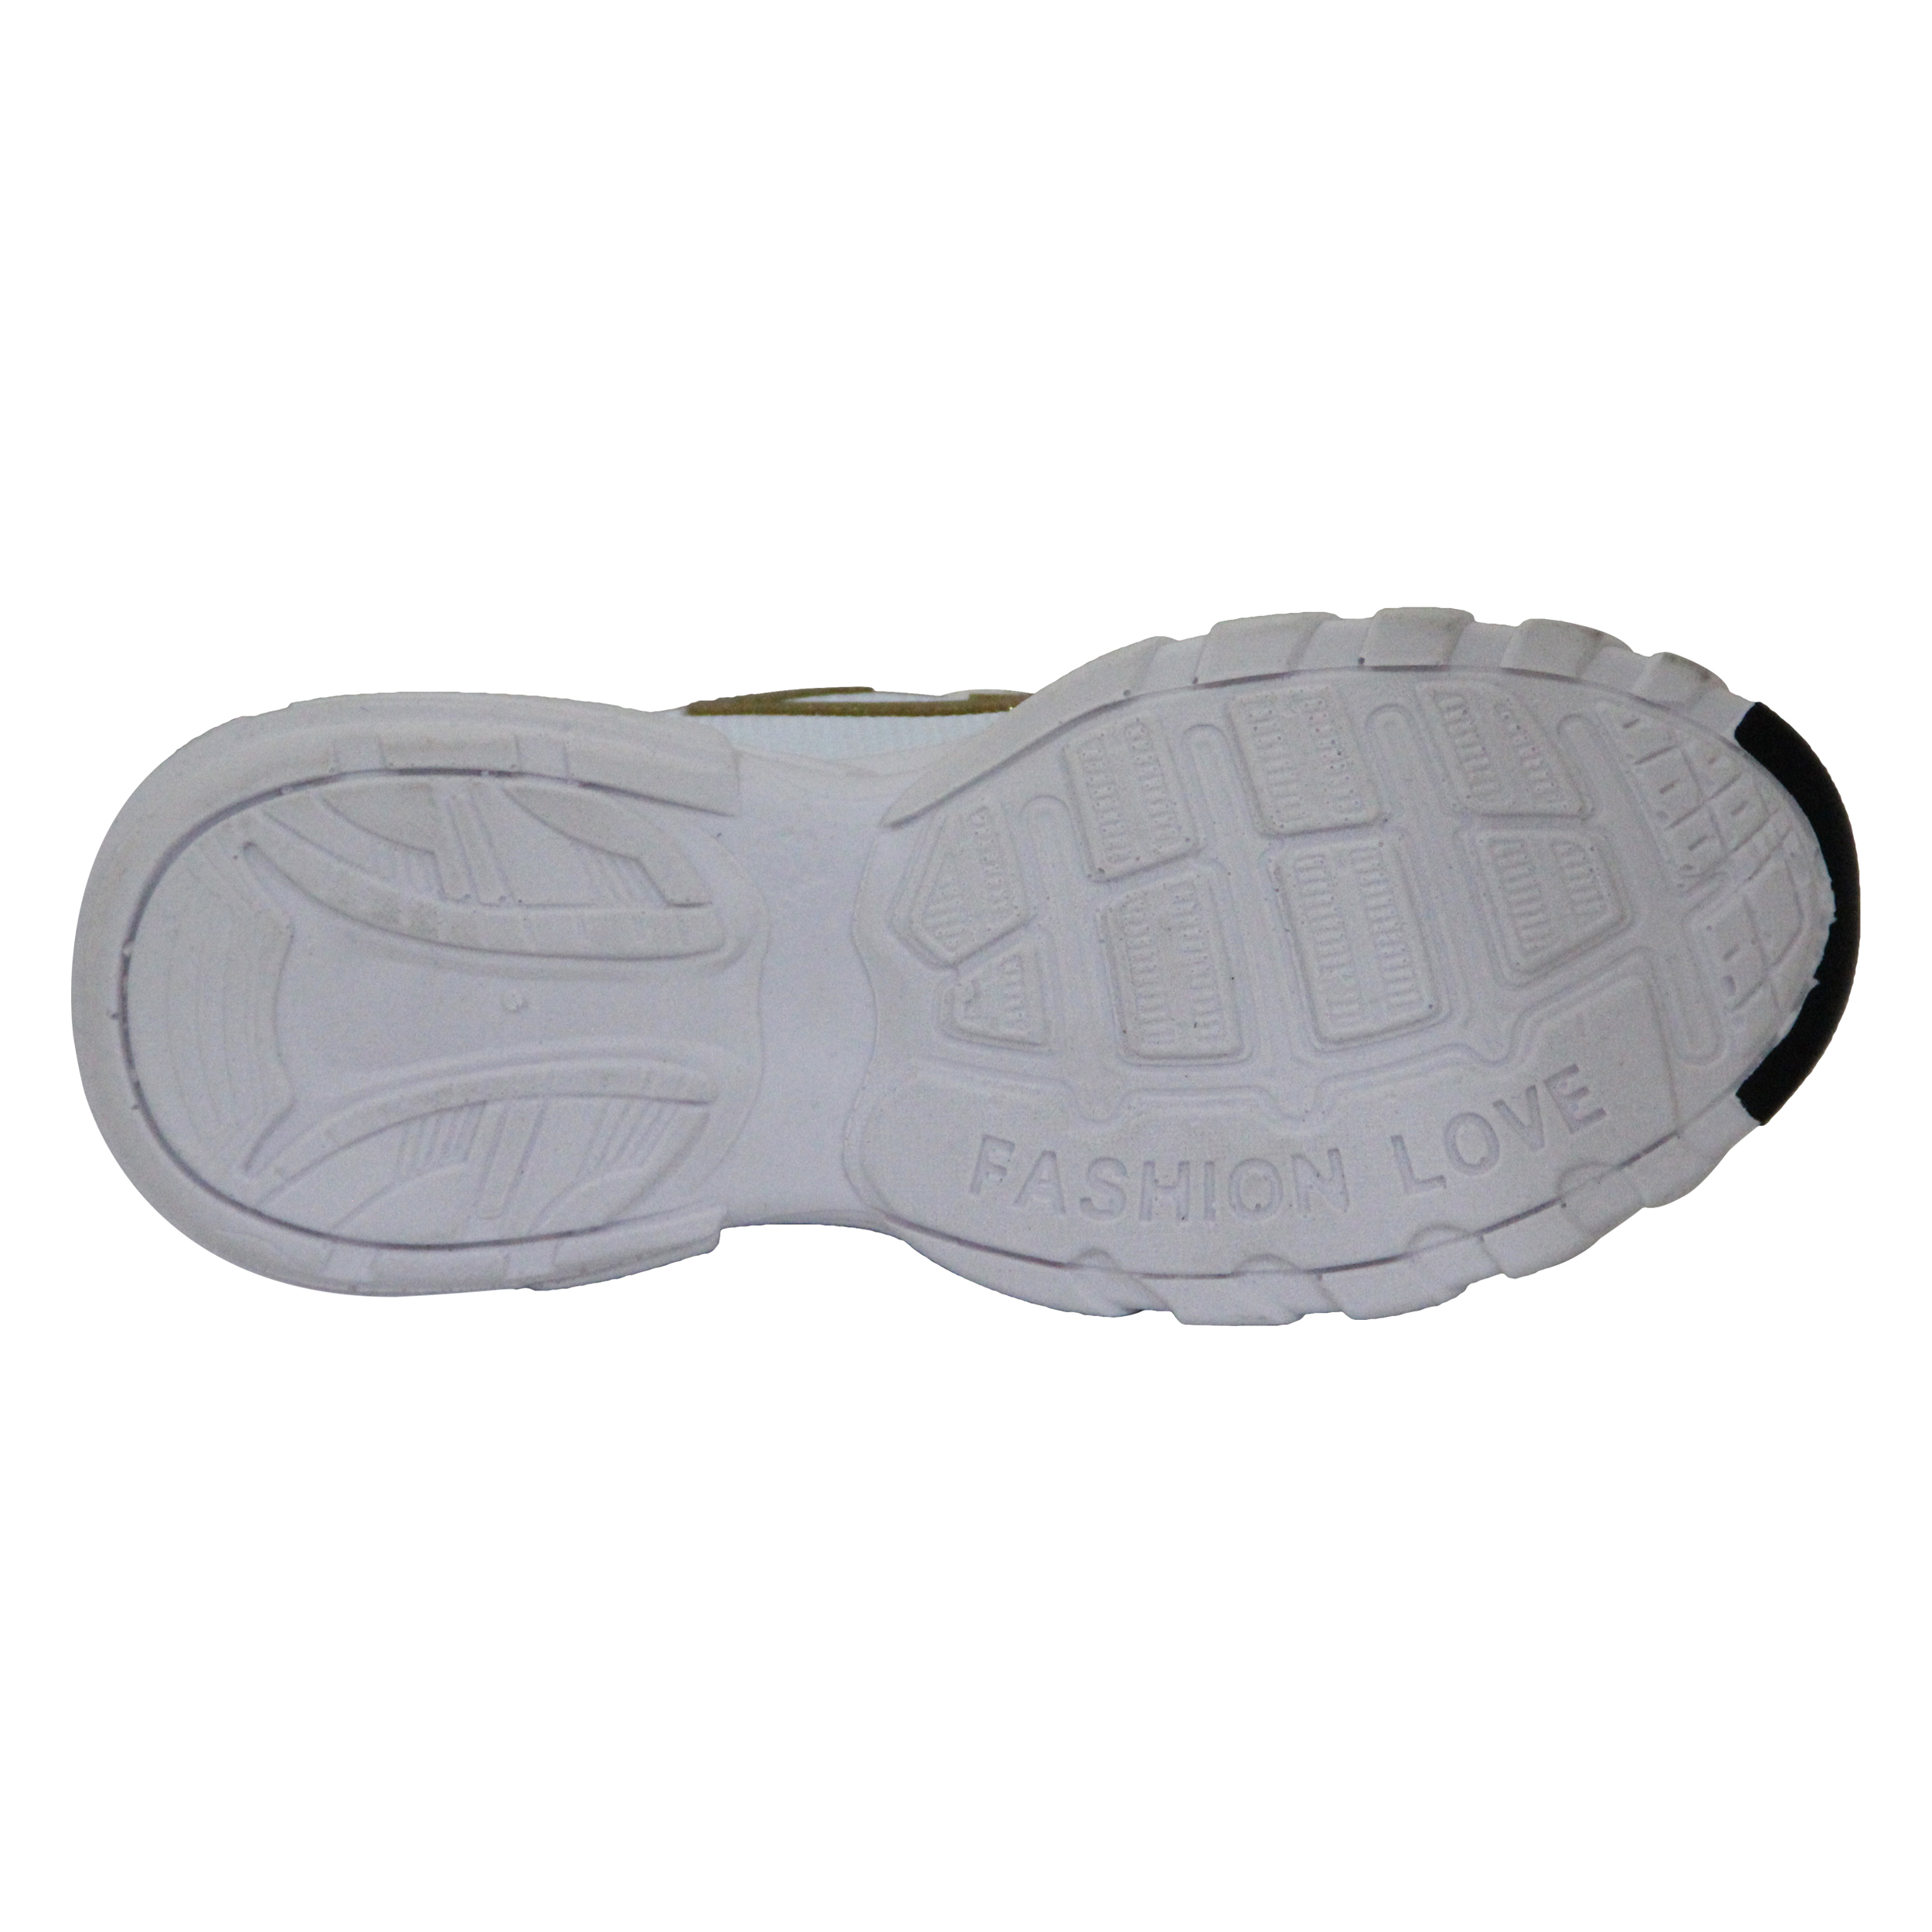  کفش مخصوص پیاده روی زنانه کد 4-2399900